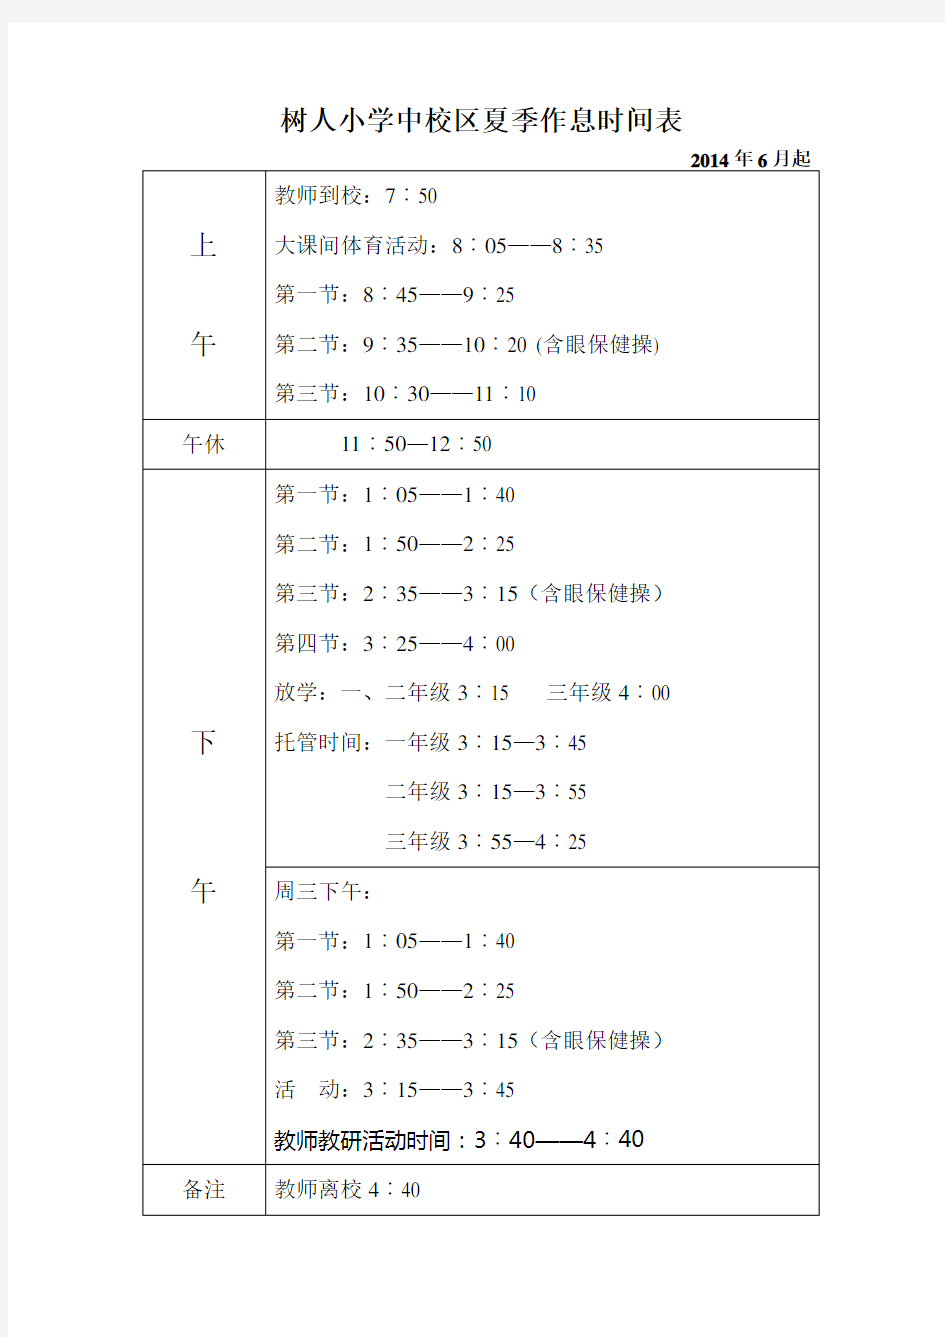 2014树人小学中校区作息时间表(夏季)